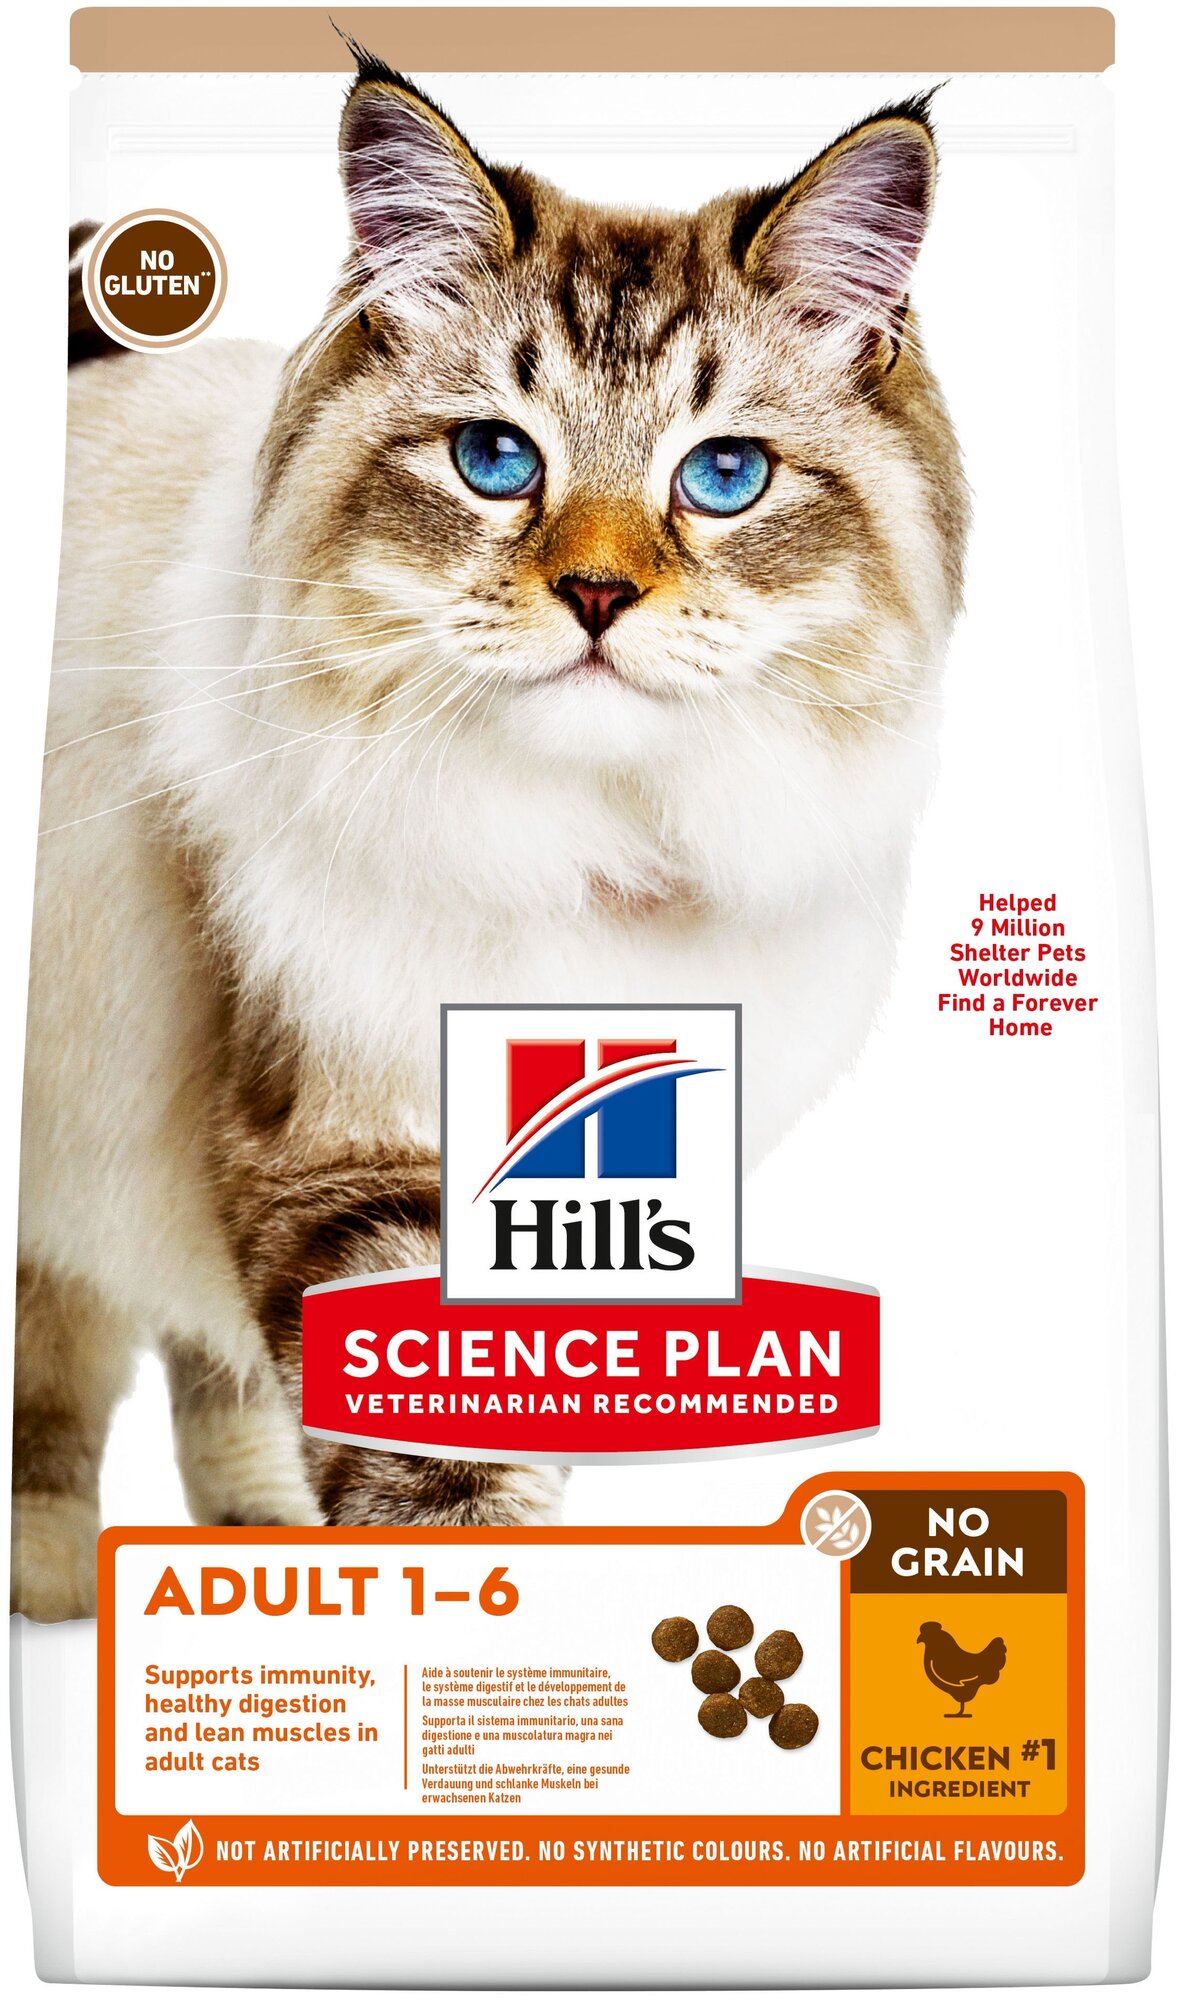 Беззлаковый сухой корм Hill's Science Plan No Grain для взрослых кошек, с курицей, 1.5 кг